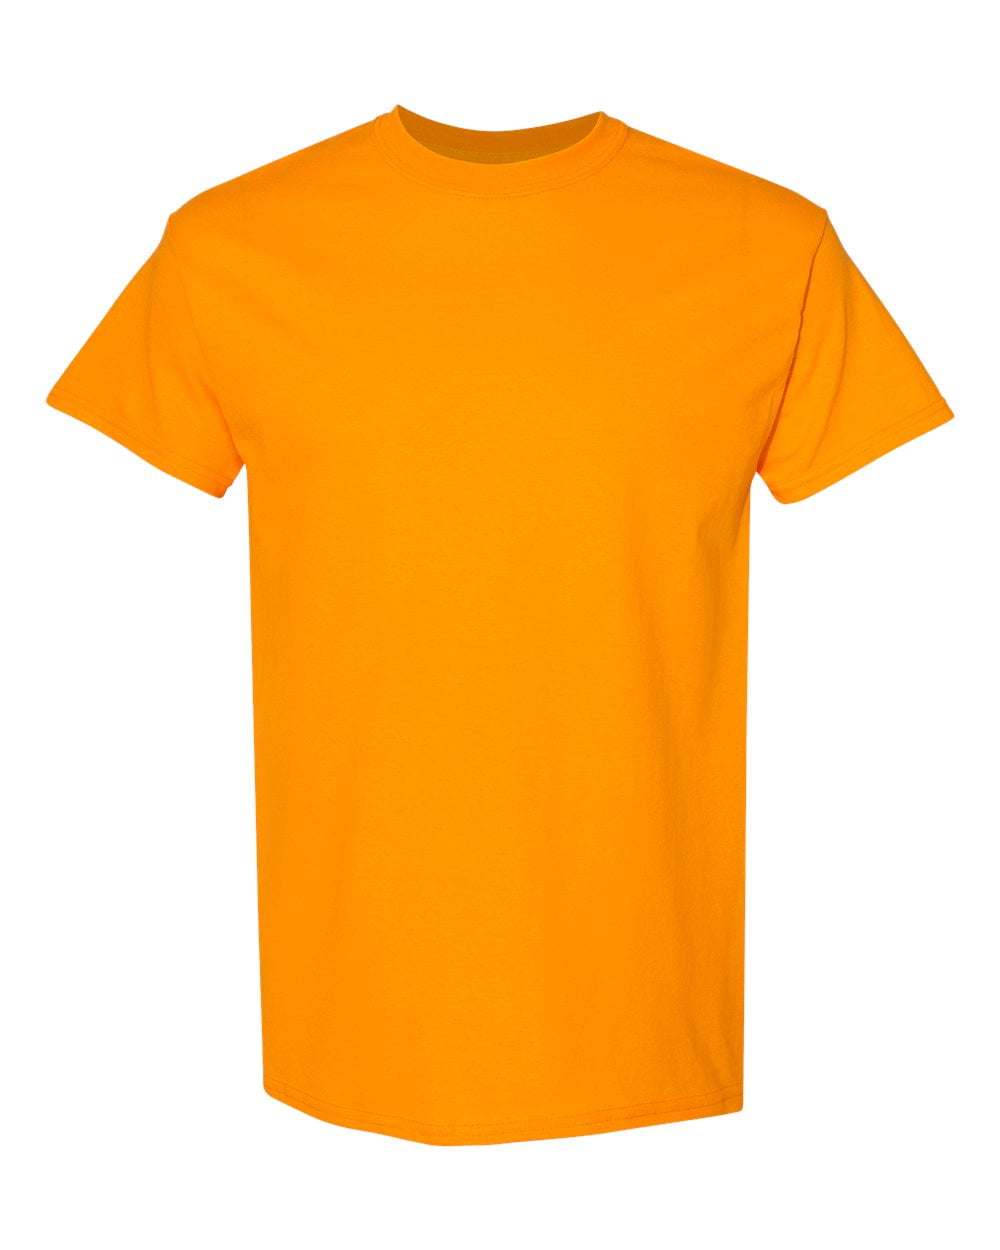 Men Heavy Cotton Multi Colors T-Shirt Color Tennessee Orange Large Size ...